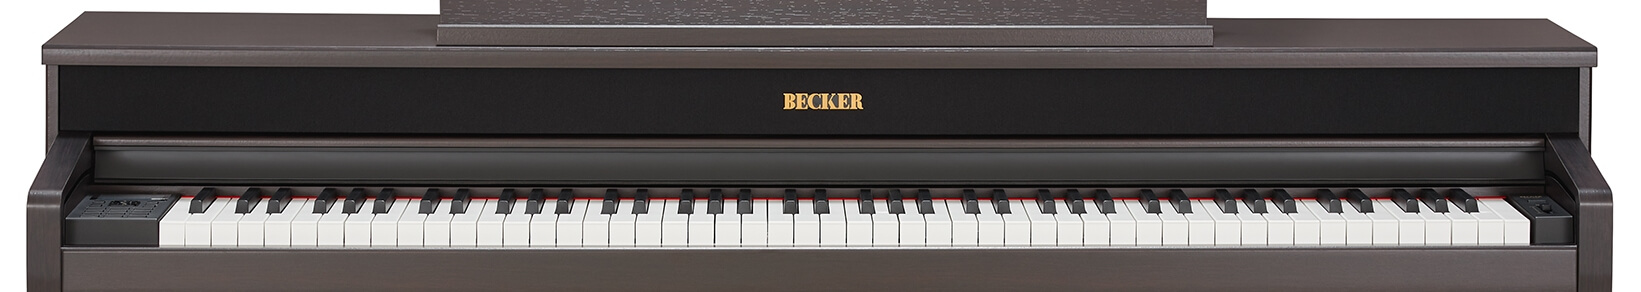 Becker BAP-72R